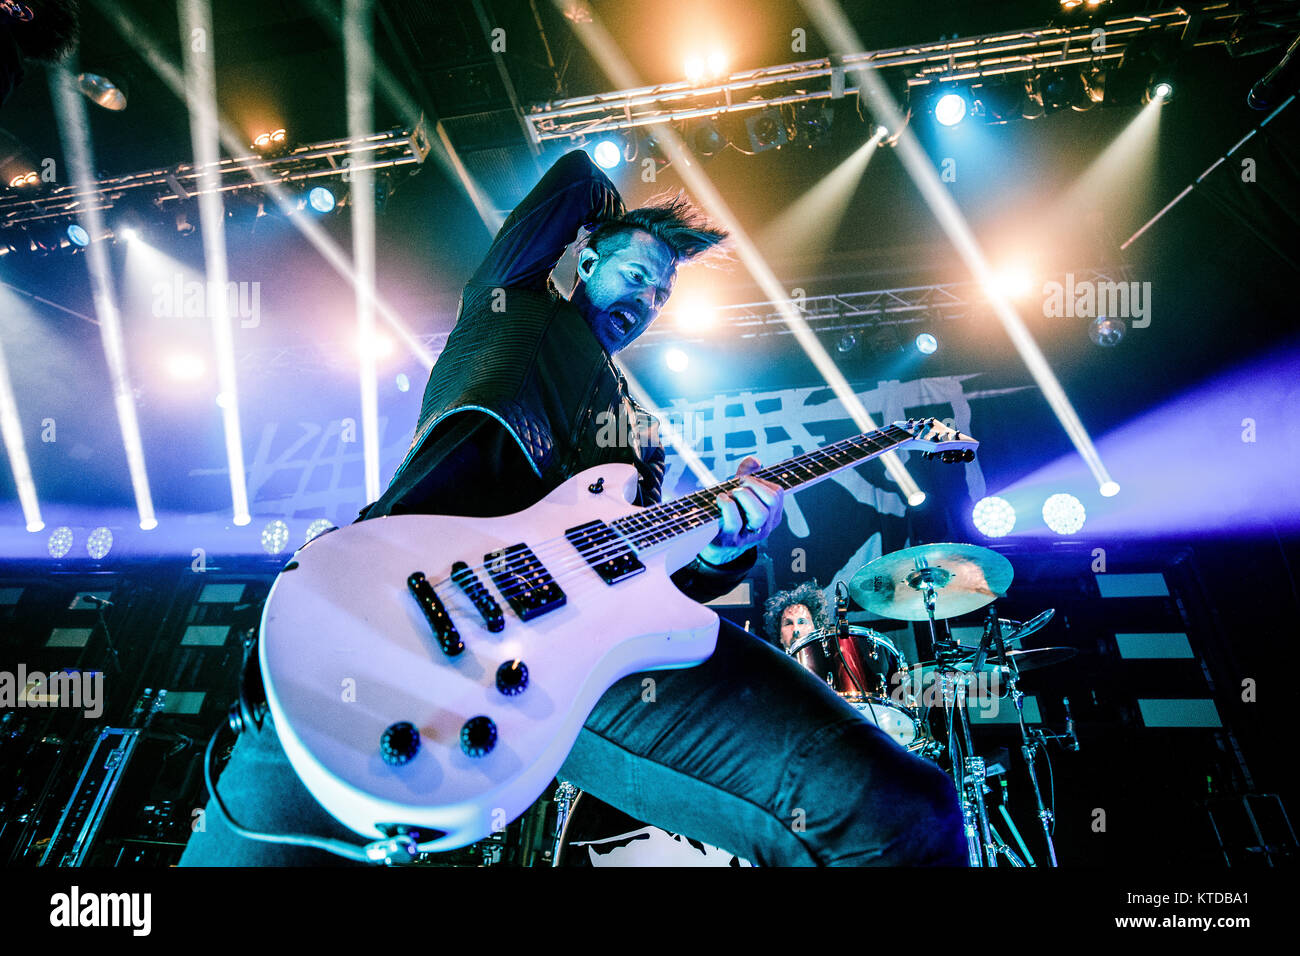 Danemark, copenhague - 22 octobre 2017. Le groupe de metal américain de rock Papa Roach effectue un concert live à Amager Bio à Copenhague. Ici le guitariste Jerry Horton est vu sur scène. (Photo crédit : Gonzales Photo - Peter Troest). Banque D'Images